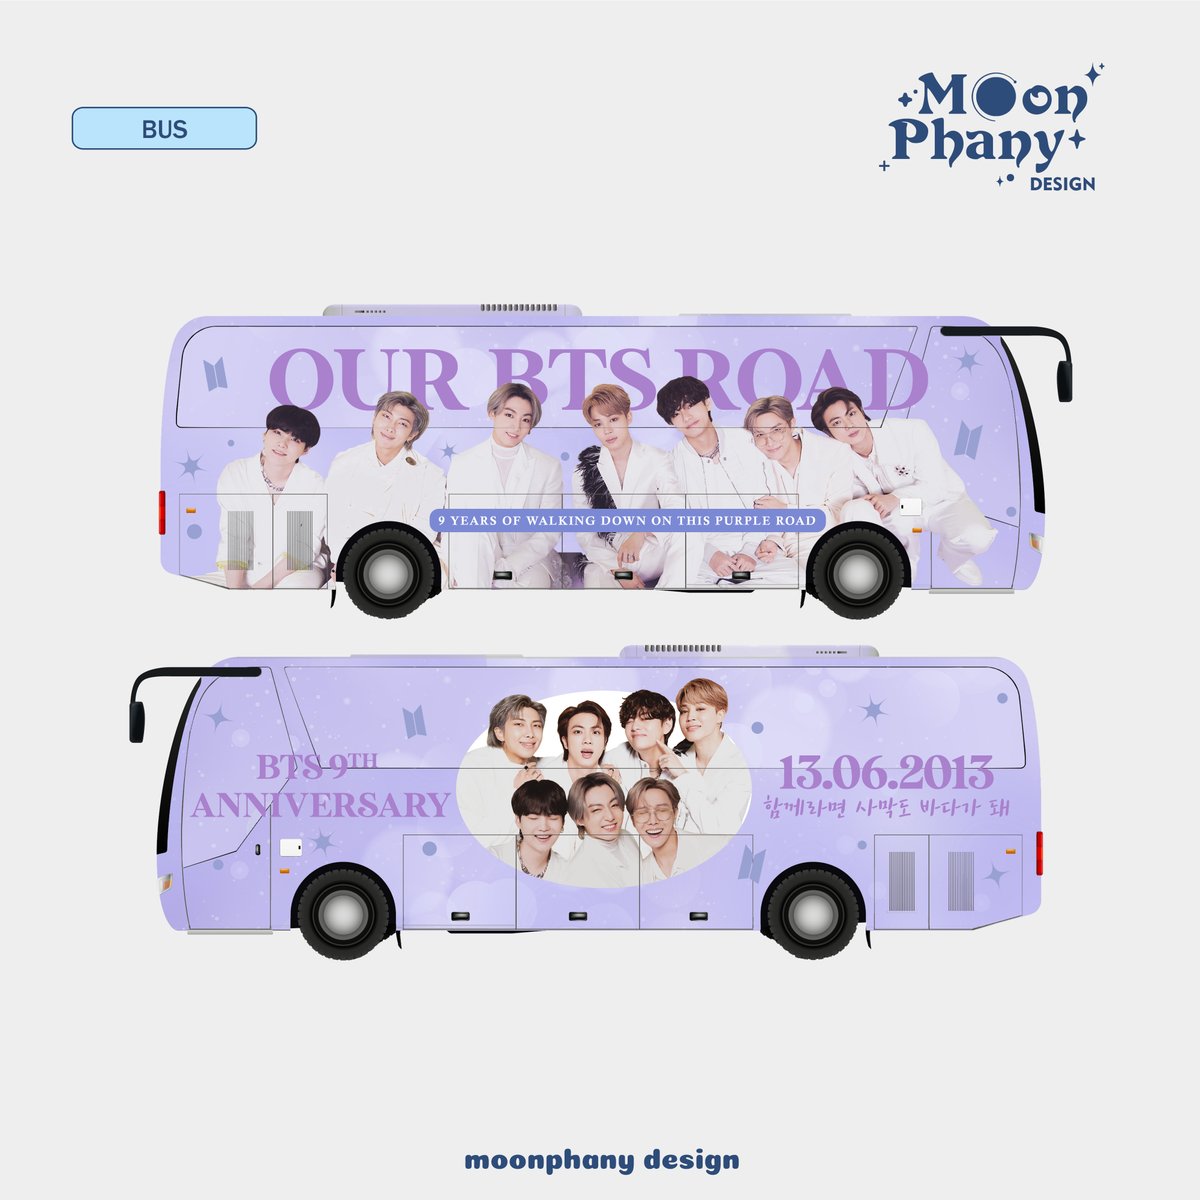 ㅡ bts bus ad project © moonphany design #bts #bangtansonyeondan #bangtanboys #방탄소년단 #busdesign #designcommission #jasadesain